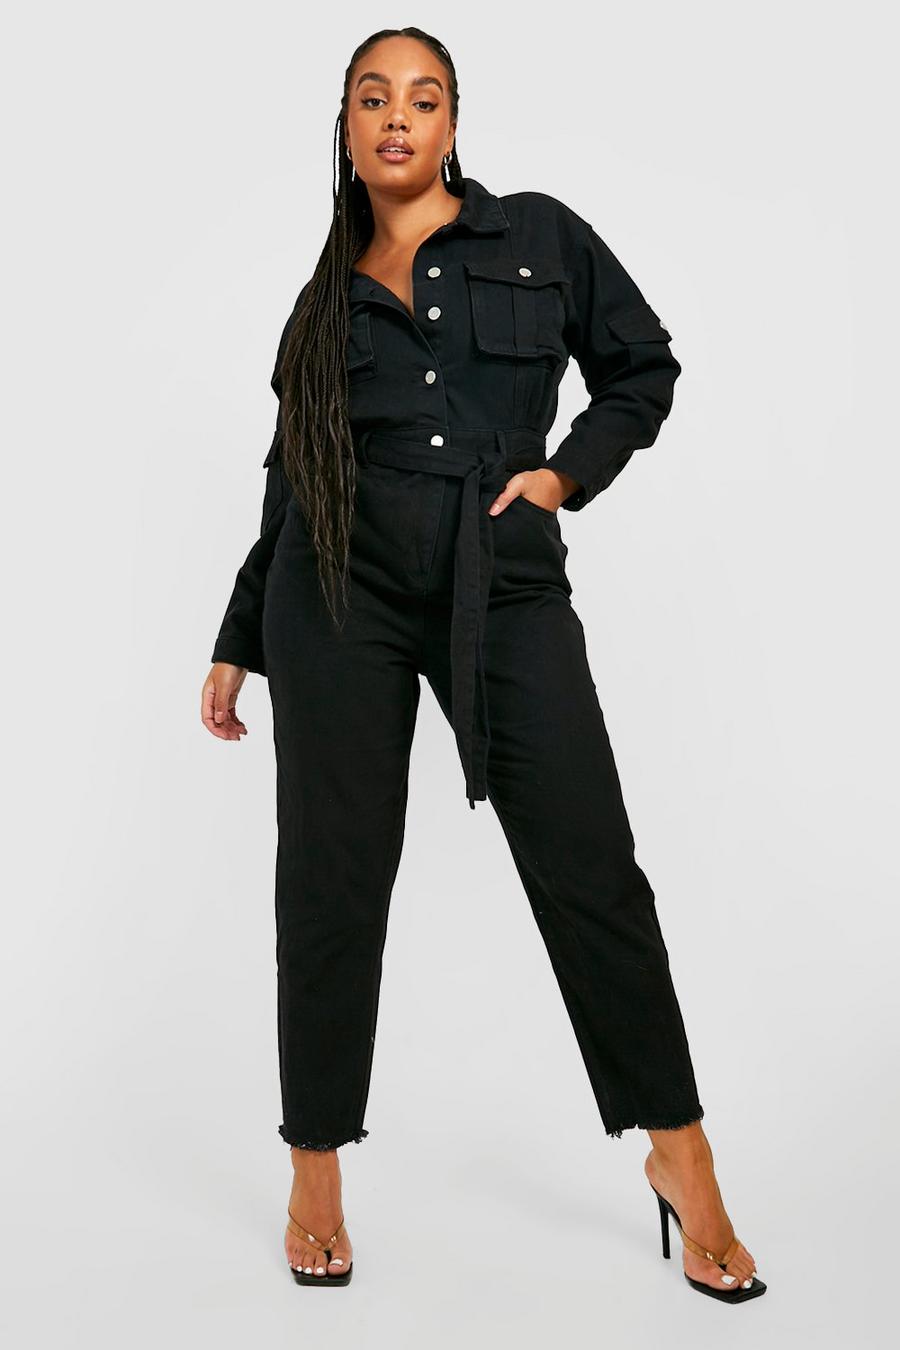 שחור סרבל ארוך מבד ג'ינס בסגנון קרגו עם חגורה וגזרת קרסול צרה, מידות גדולות